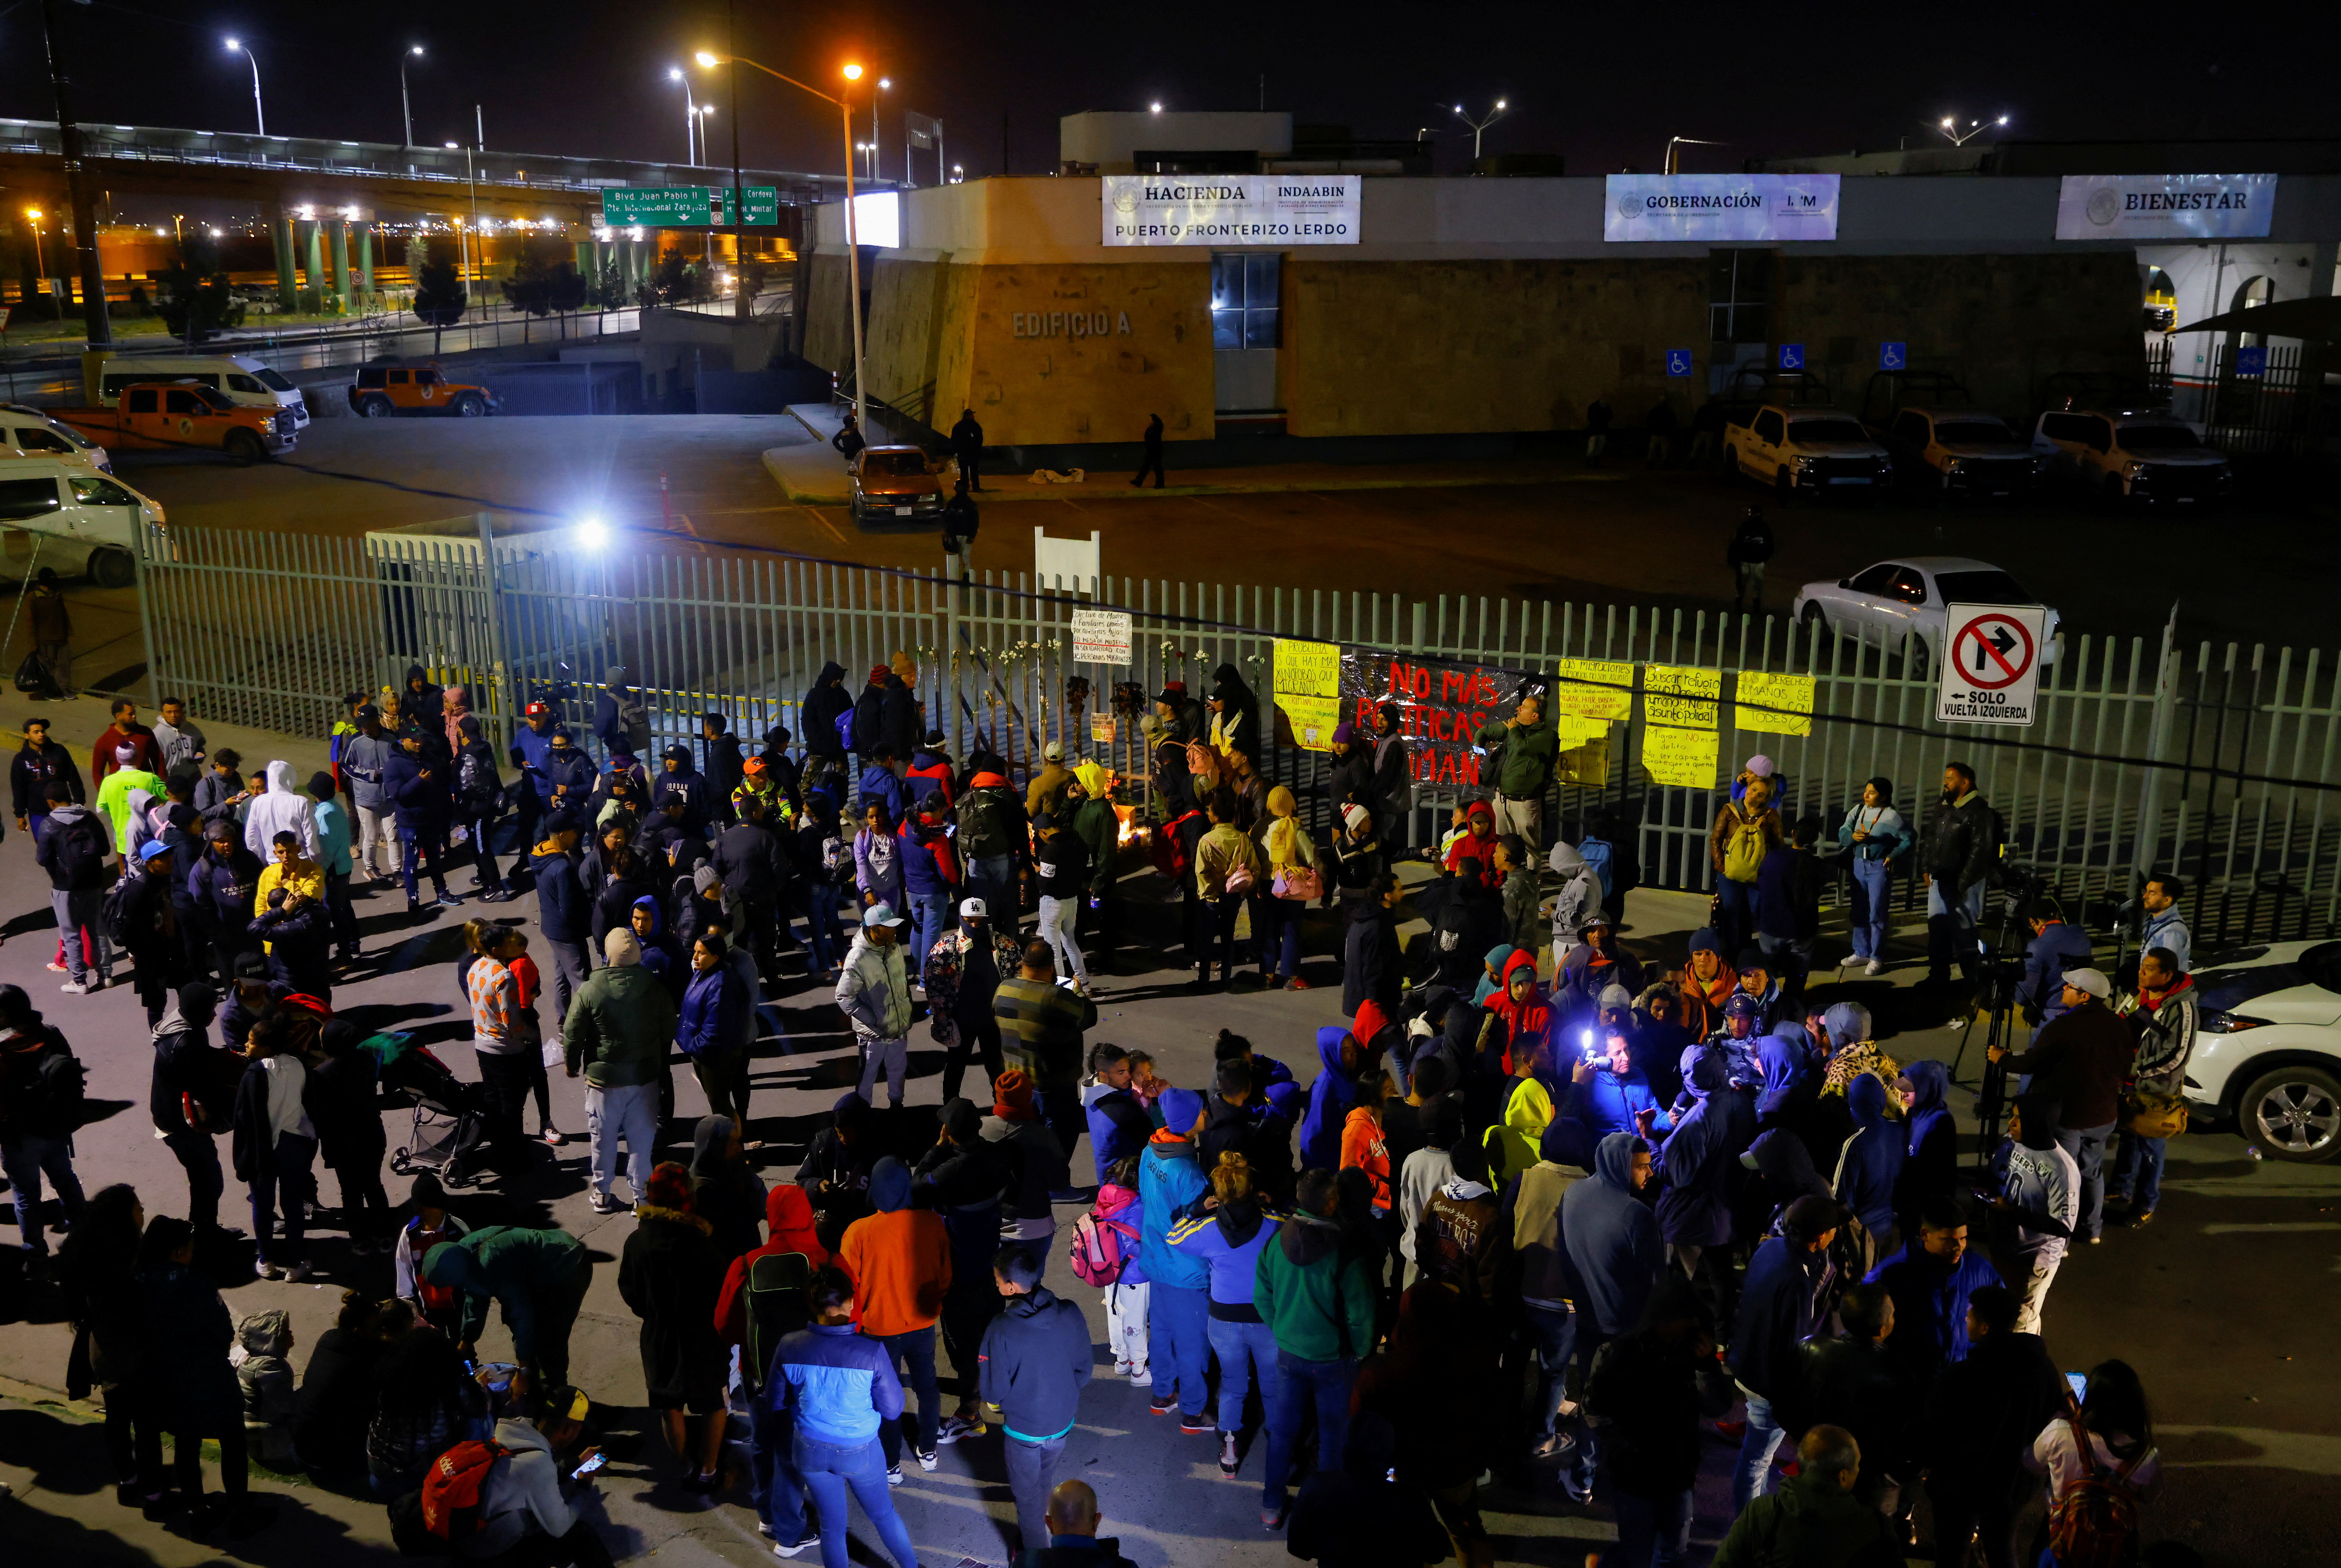 Migrantes mantuvieron vigilia en el centro migratorio de Ciudad Juarez, por la muerte de los 39 migrantes (REUTERS/Jose Luis Gonzalez)